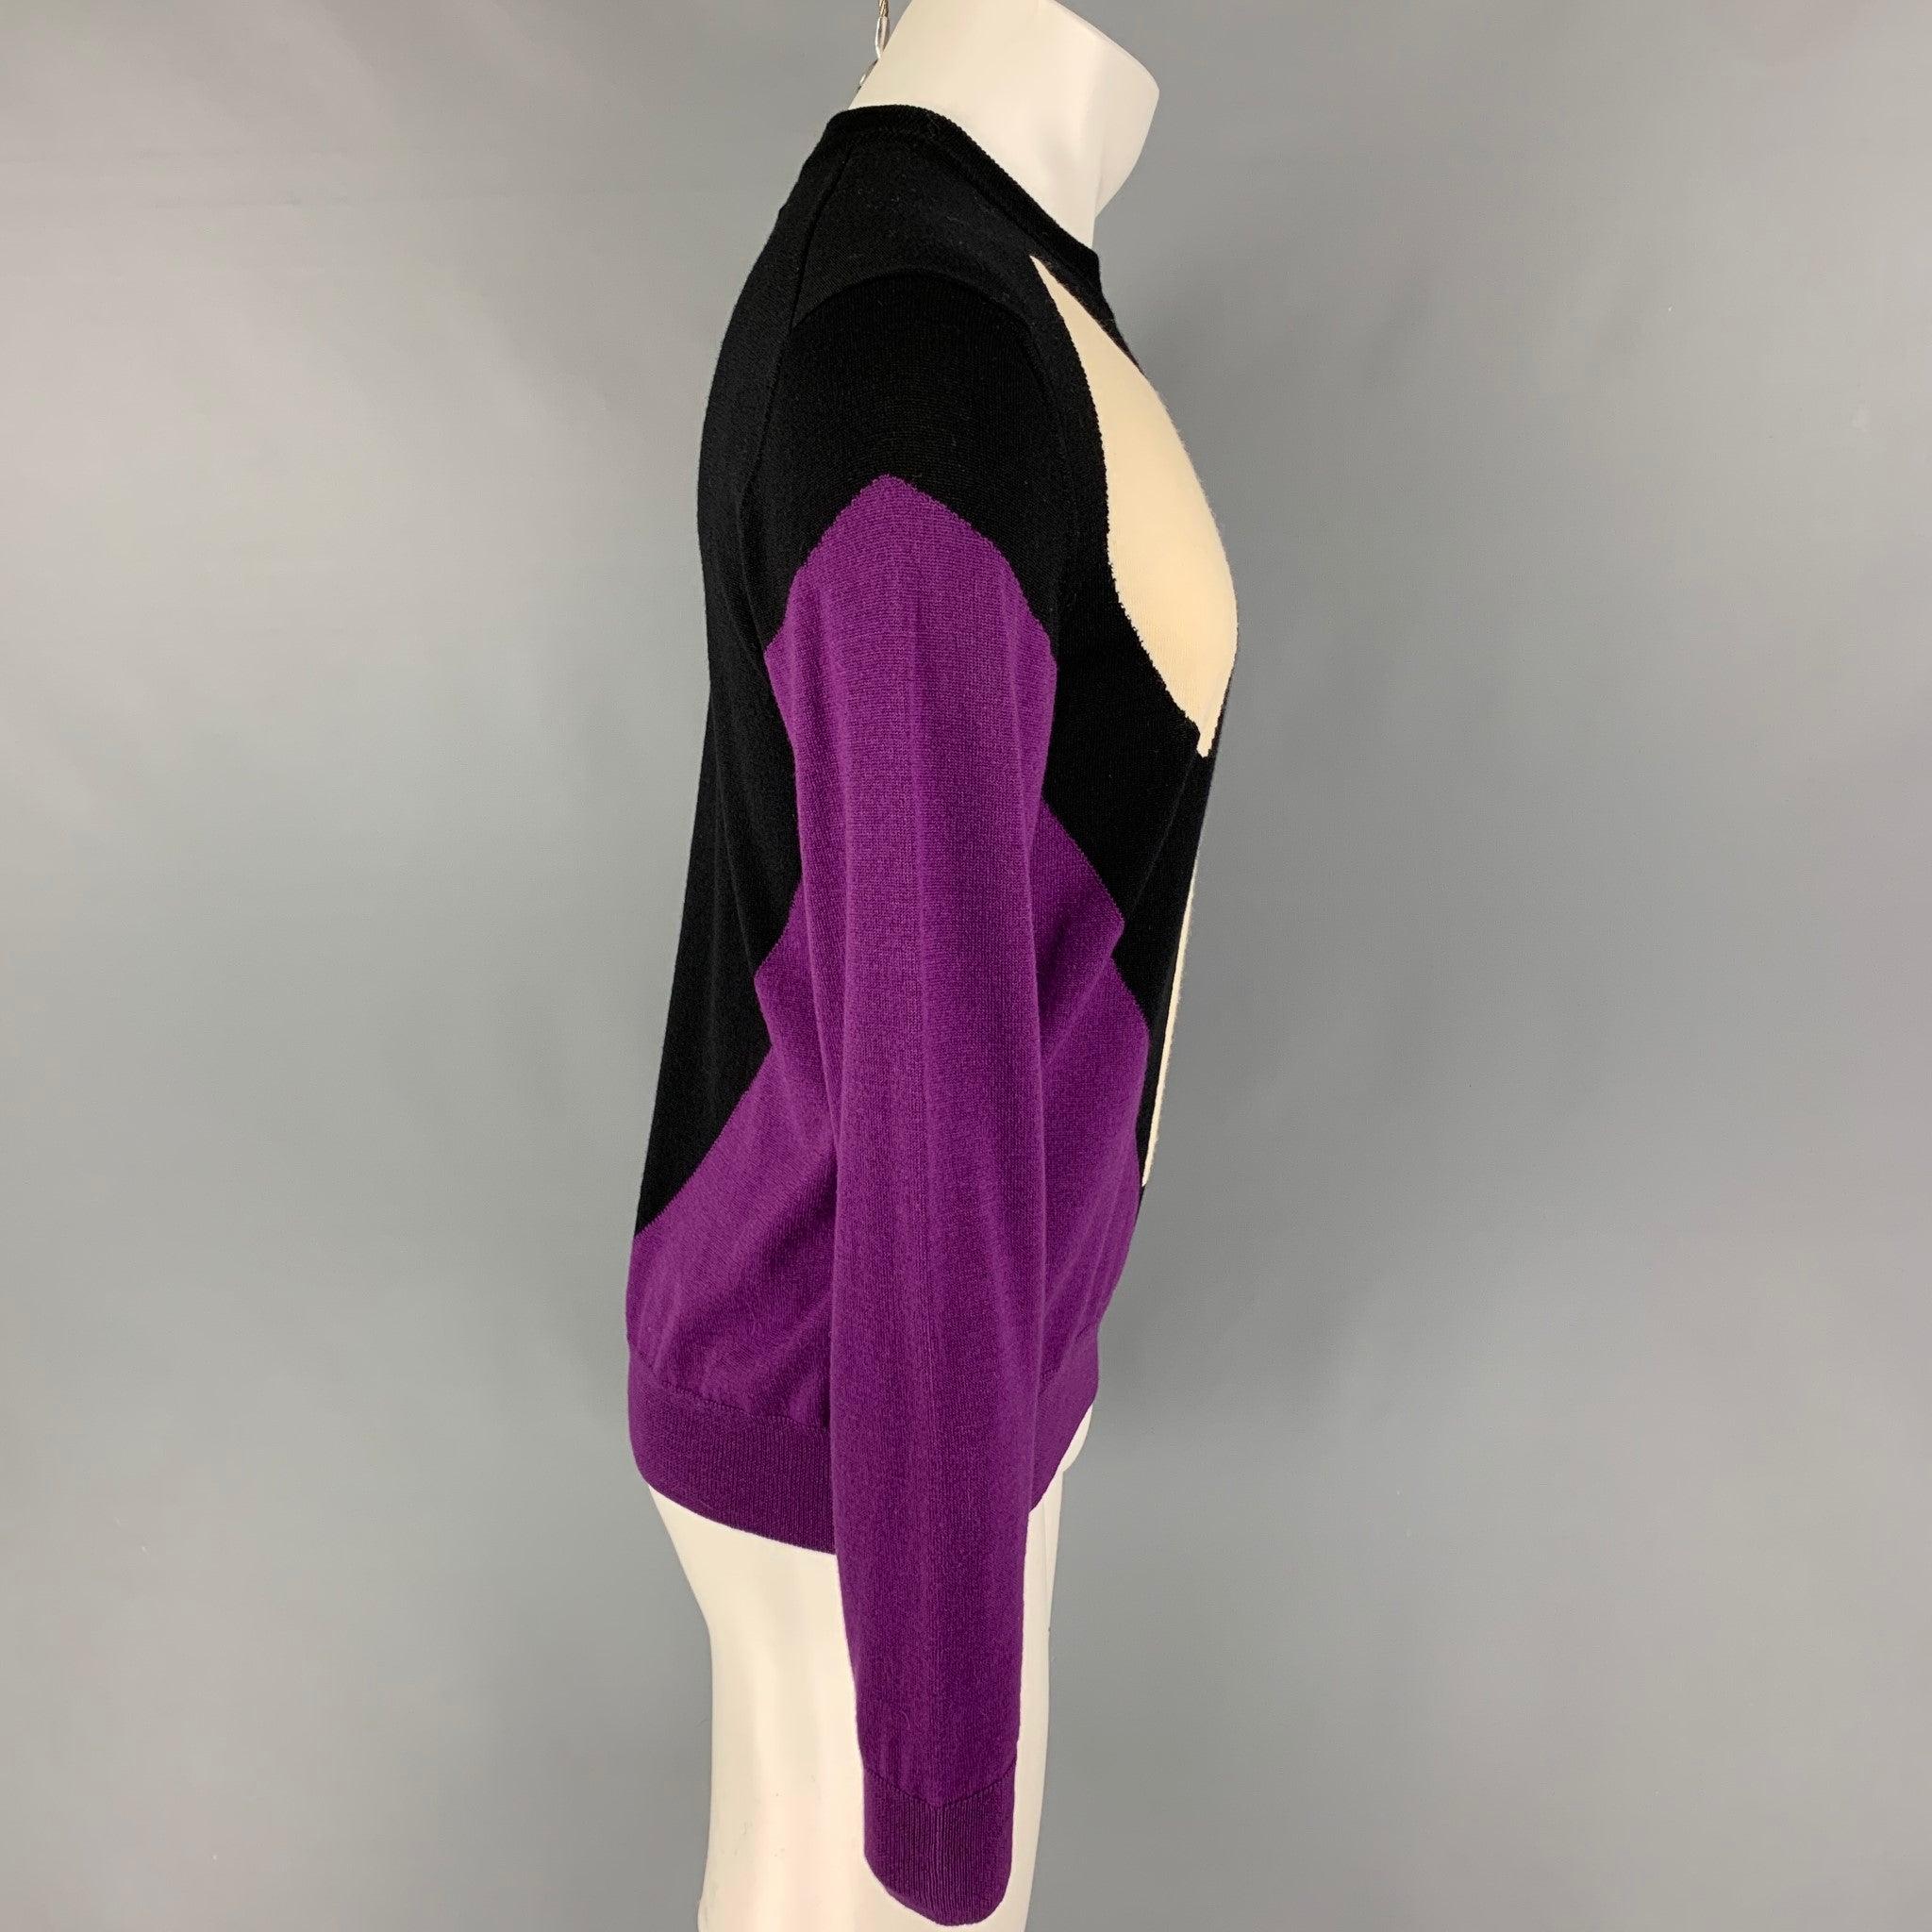 VETEMENTS x COMME des GARCONS SHIRT SS17 Pullover aus schwarzer und violetter Wolle mit 